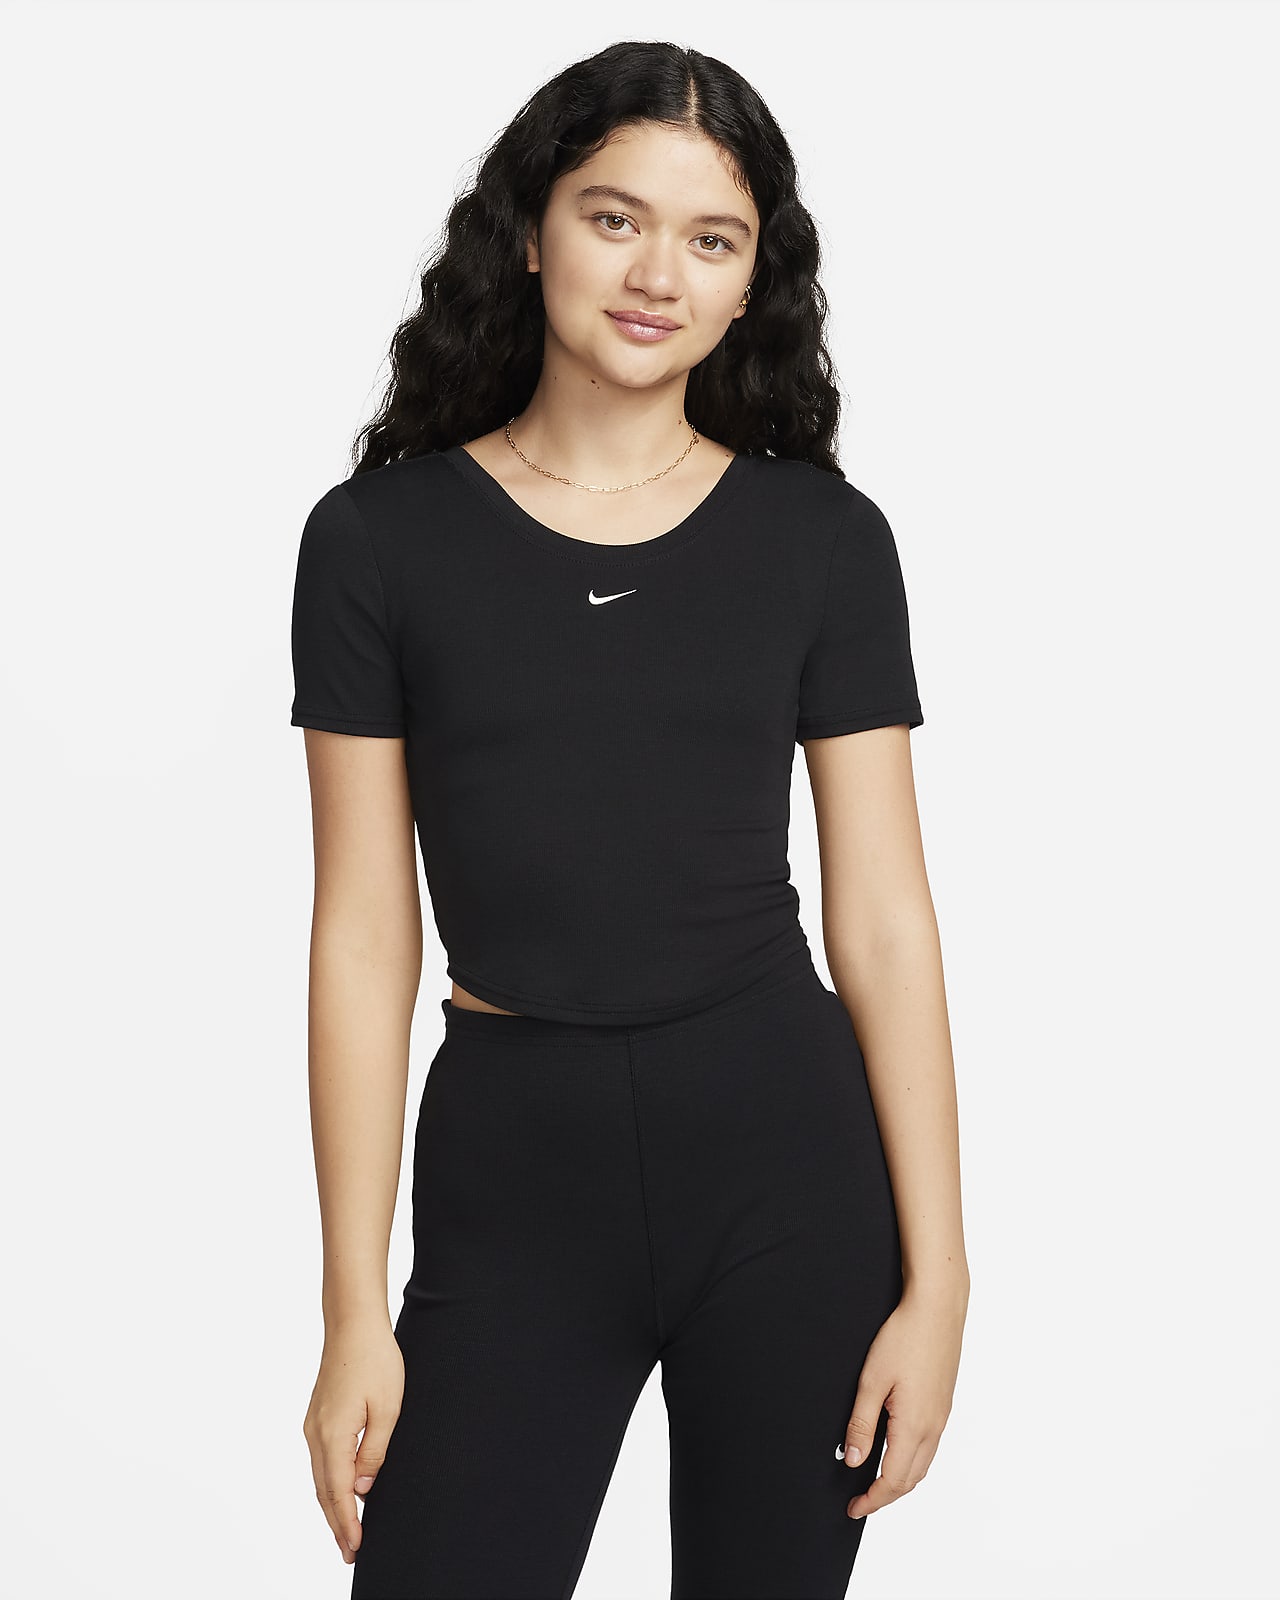 Nike Sportswear Chill Knit szűkített, hátul mélyen kivágott, rövid ujjú, finoman bordázott női felső